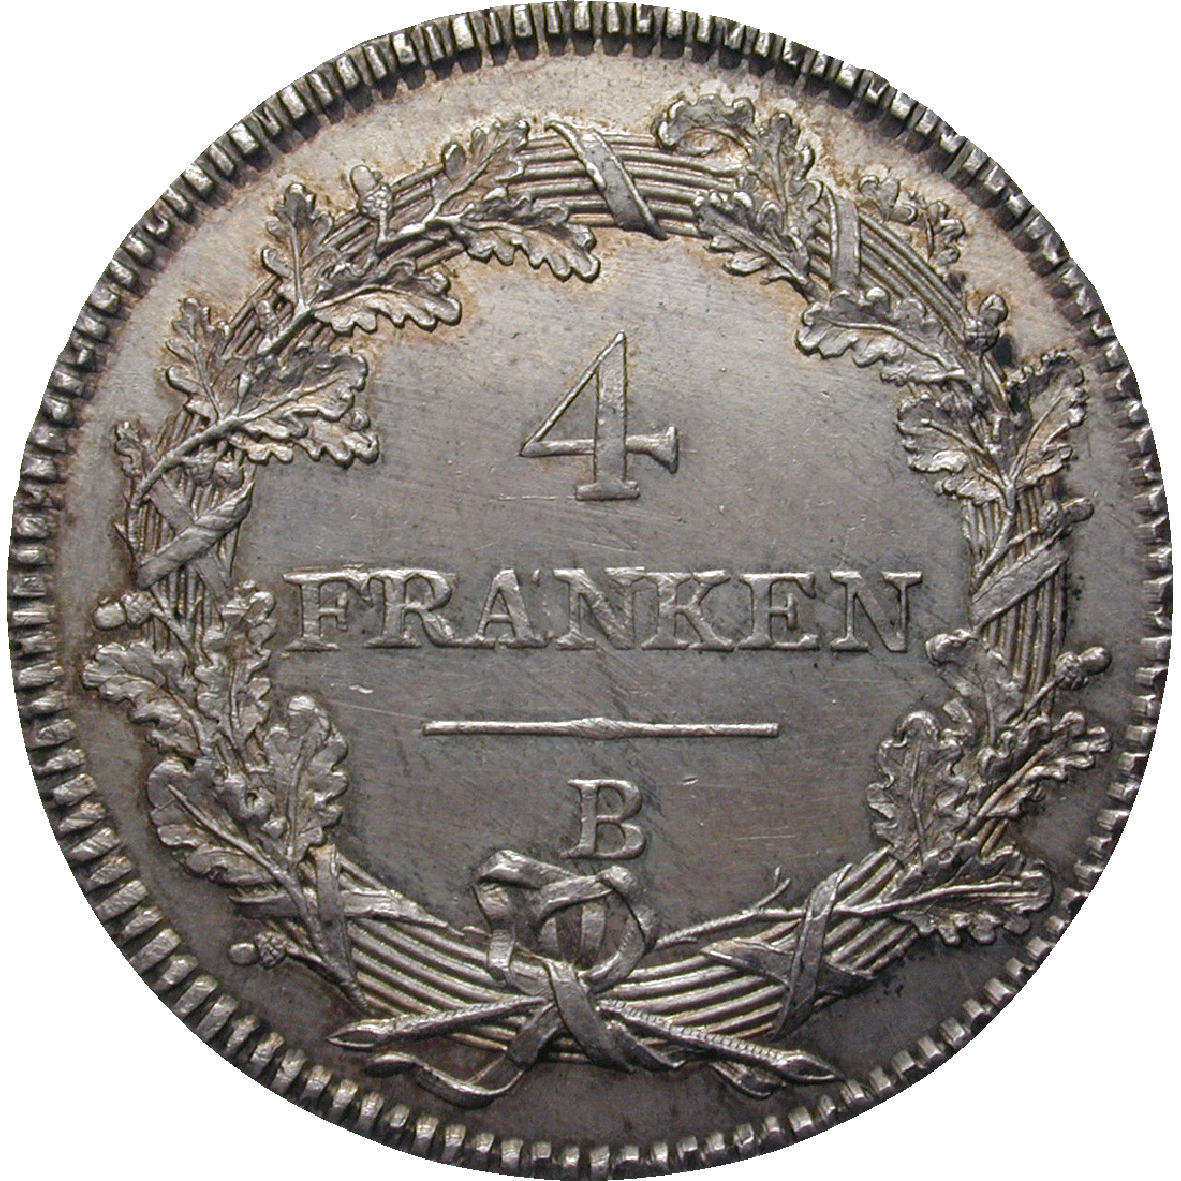 Helvetische Republik, 4 Franken 1799 (reverse)